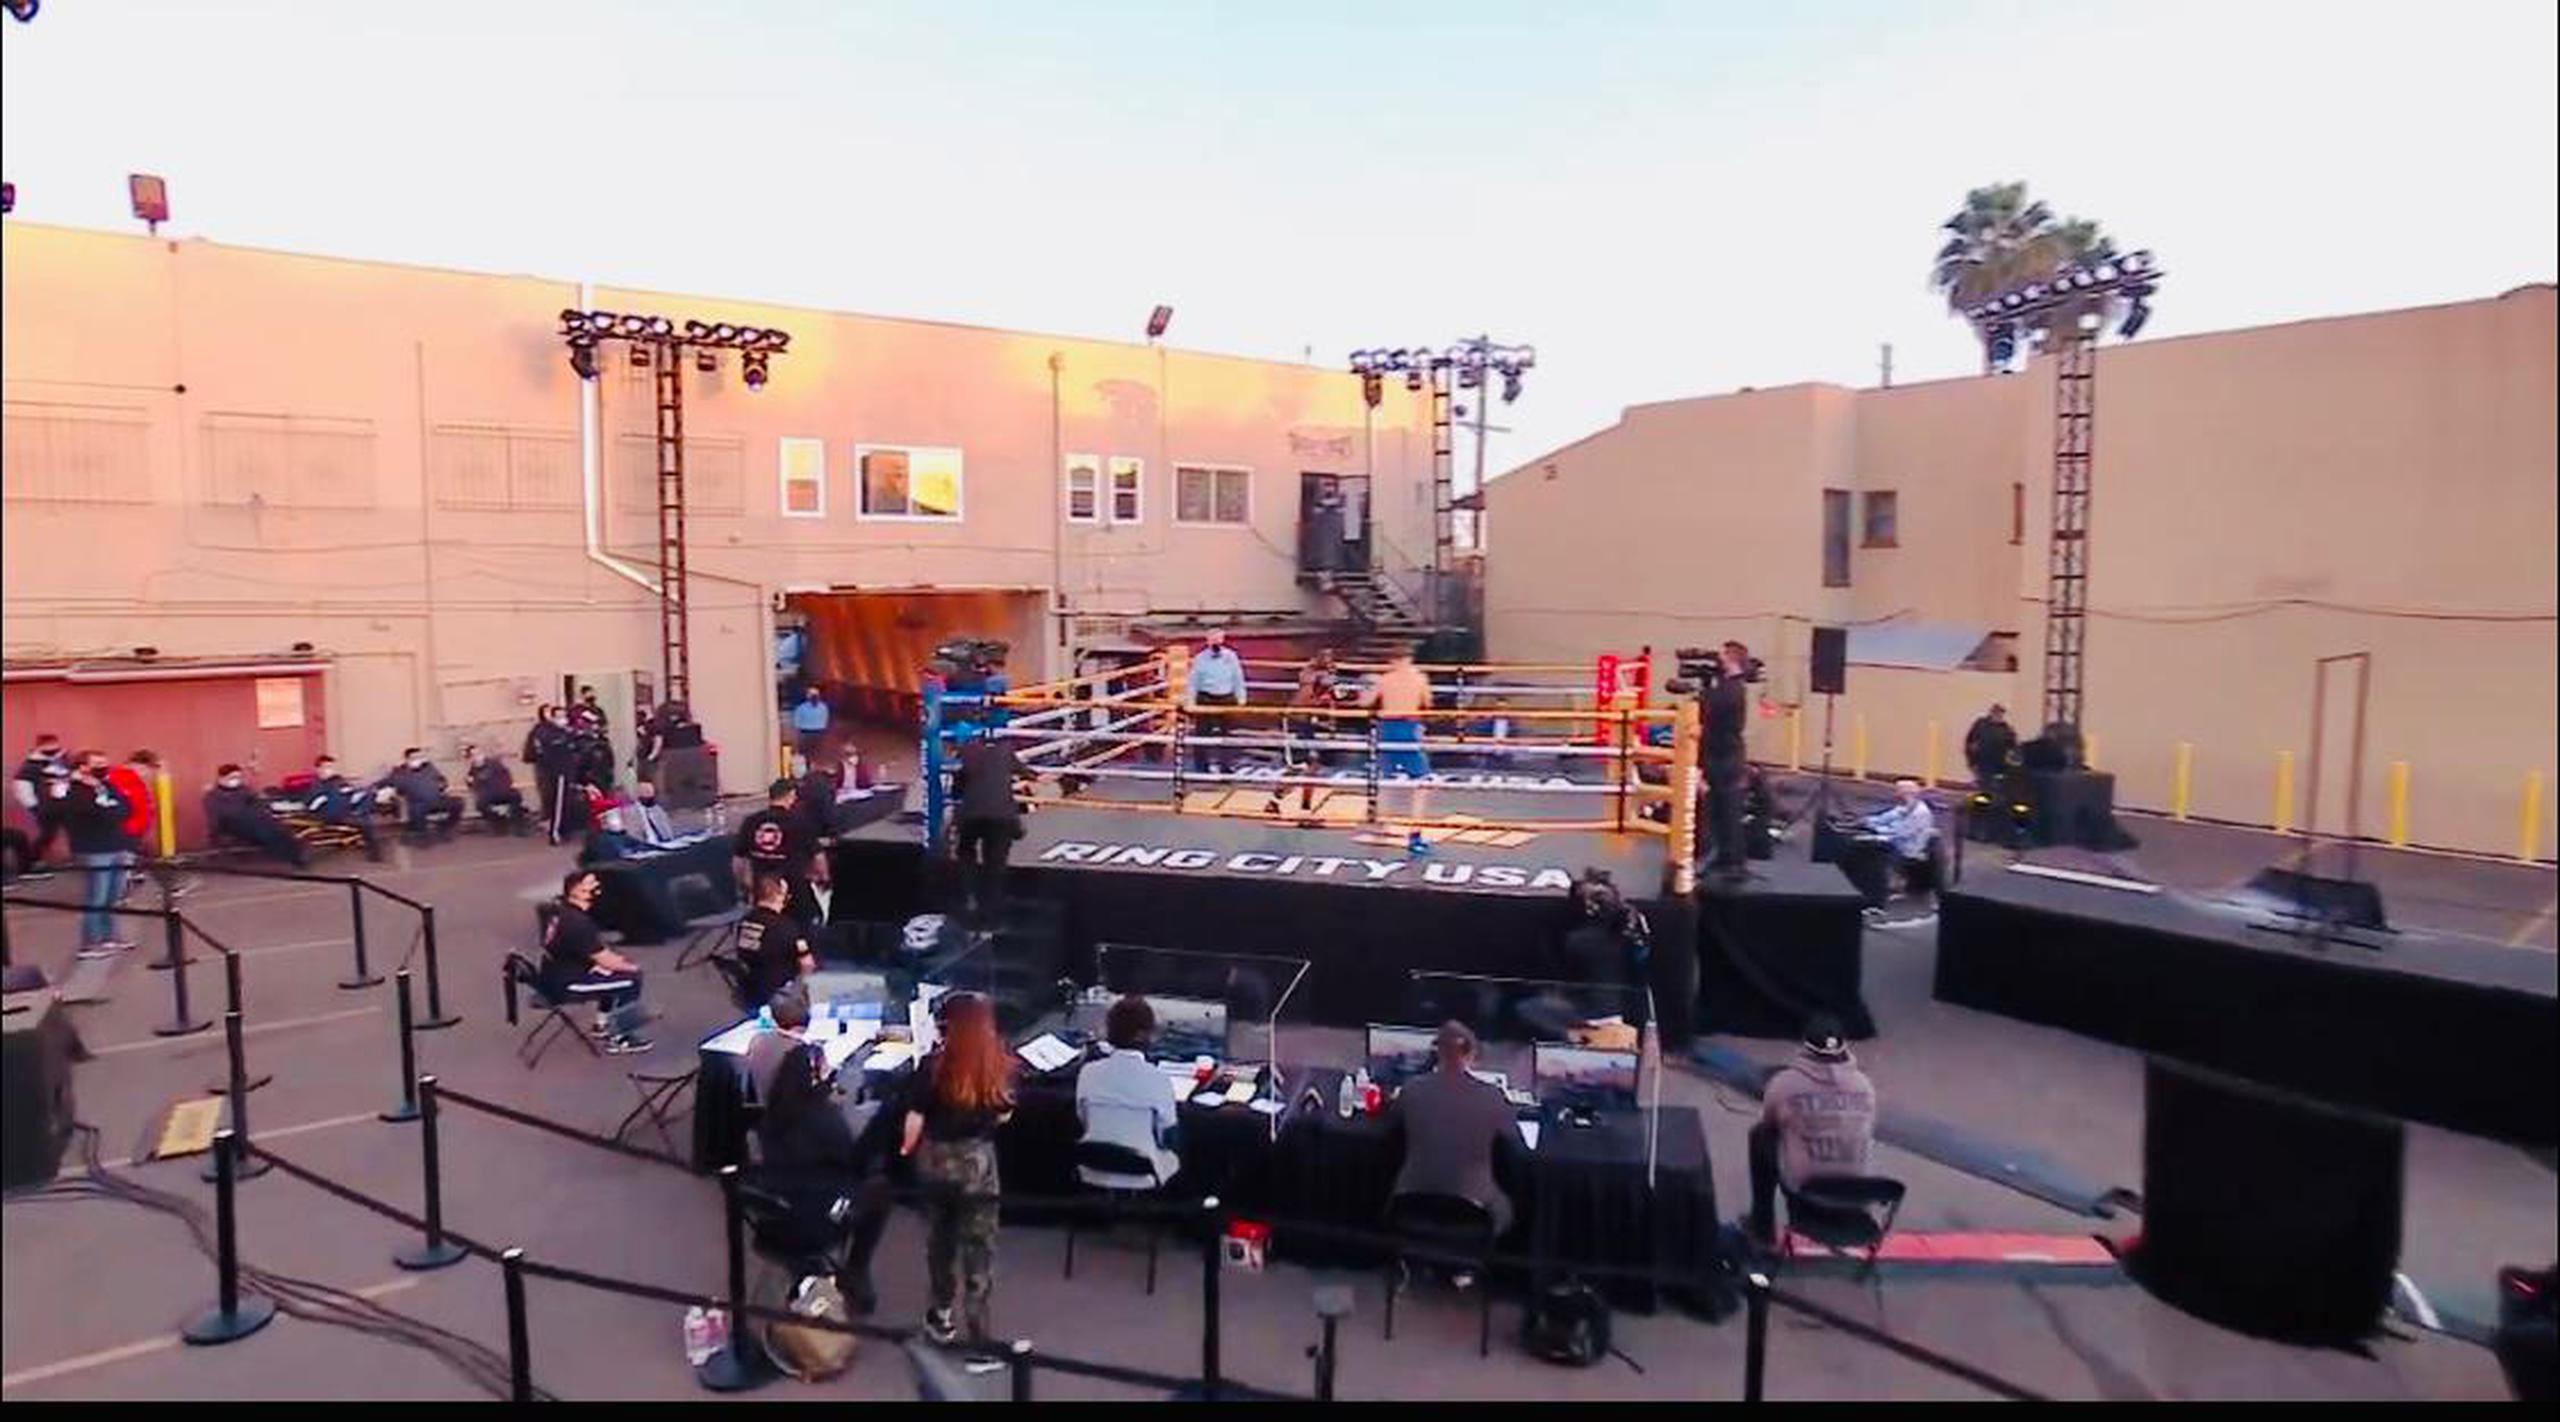 La plataforma “Ring City USA” comenzó con tres funciones en el gimnasio Wild Card de Freddie Roach en Los Ángeles, California.